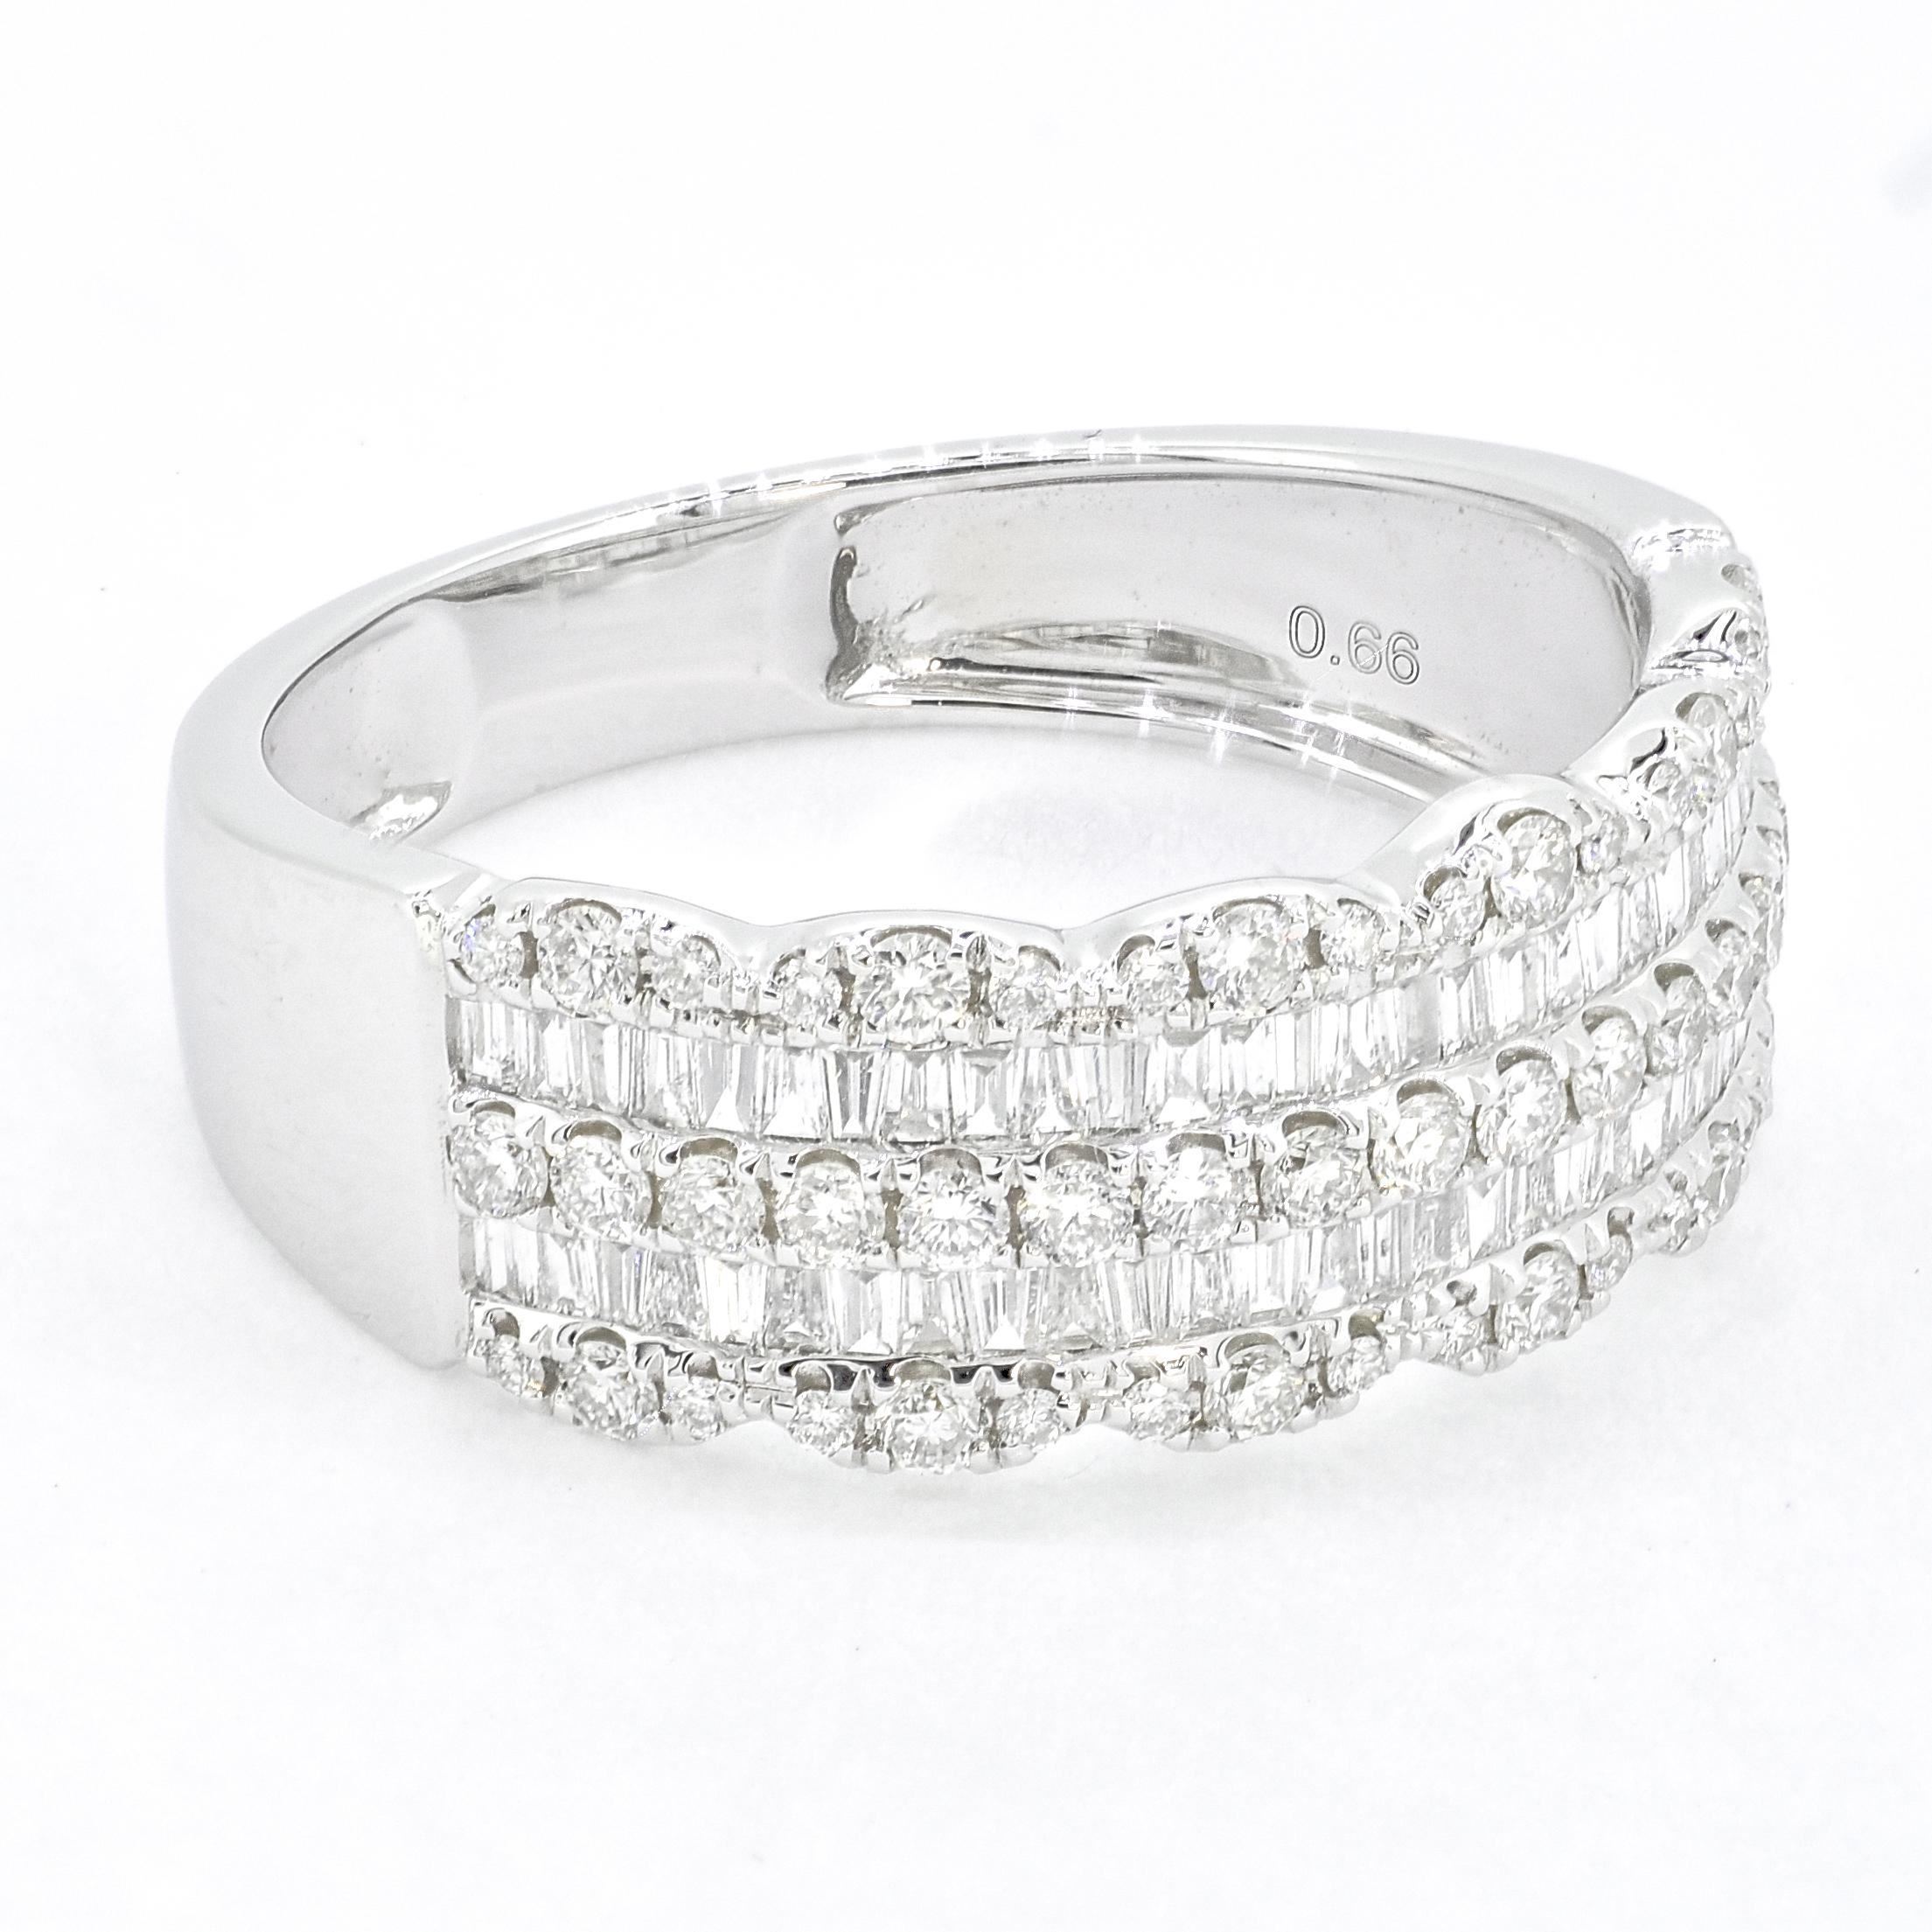 Wenn Sie auf der Suche nach einem schönen und vielseitigen Diamantring sind, den Sie allein oder zusammen mit anderen Ringen tragen können, sollten Sie ein Band aus 18-karätigem Weißgold mit Baguette- und runden Diamanten in Kanalfassung wählen.

